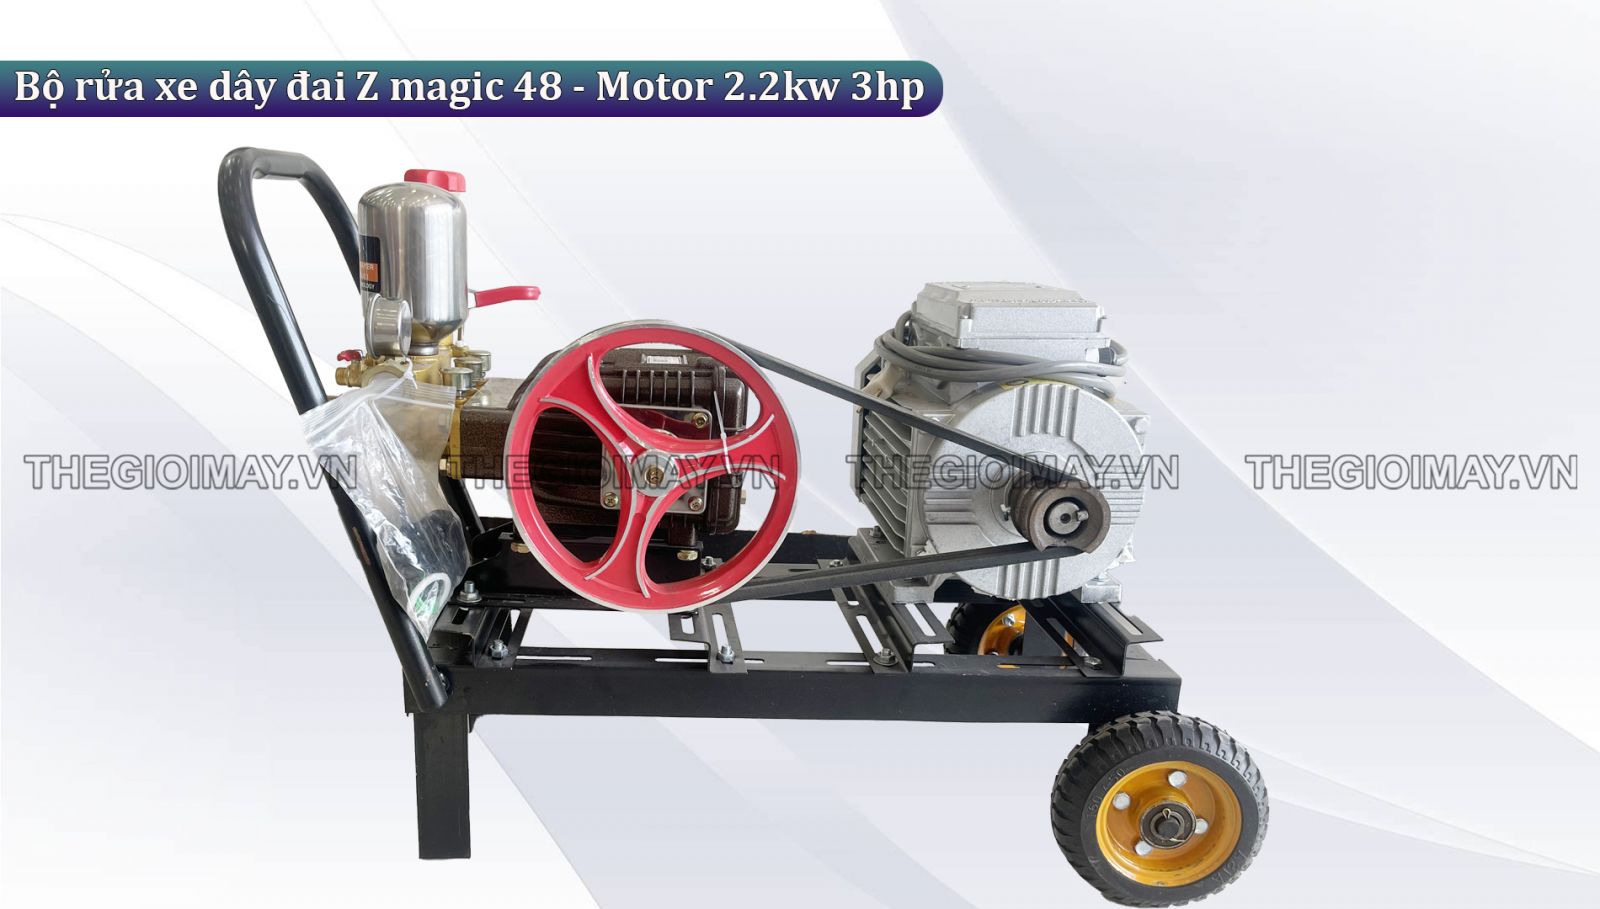 Nguyên lý hoạt động của bộ rửa xe dây đai Z magic 48 - Motor 2.2kw 3hp